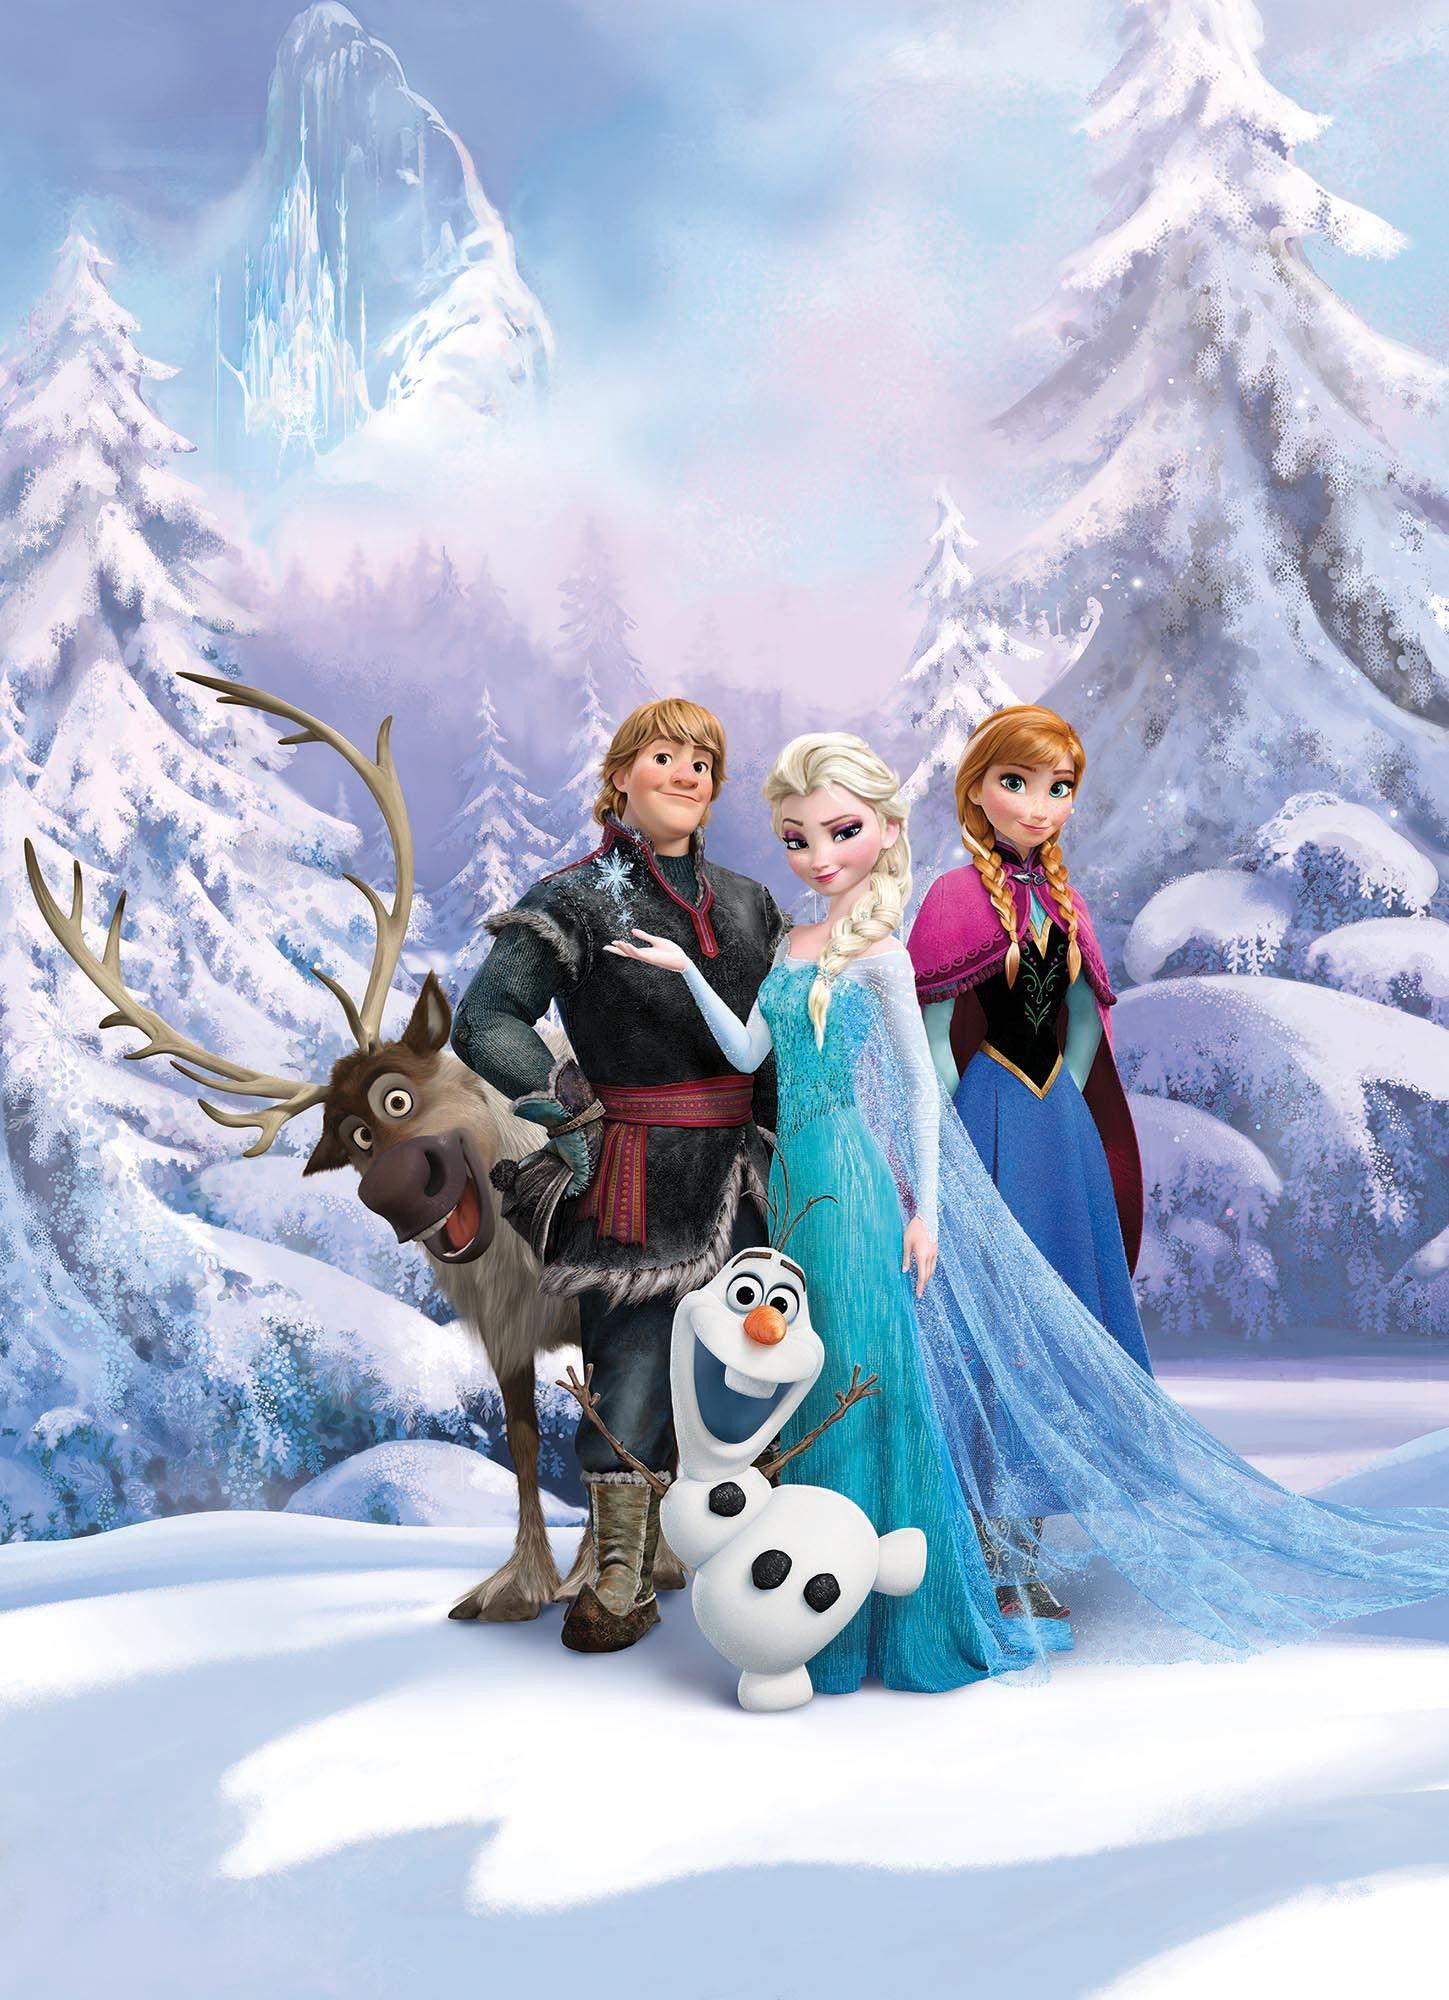 Frozen Winter Land wallpaper mural Disney